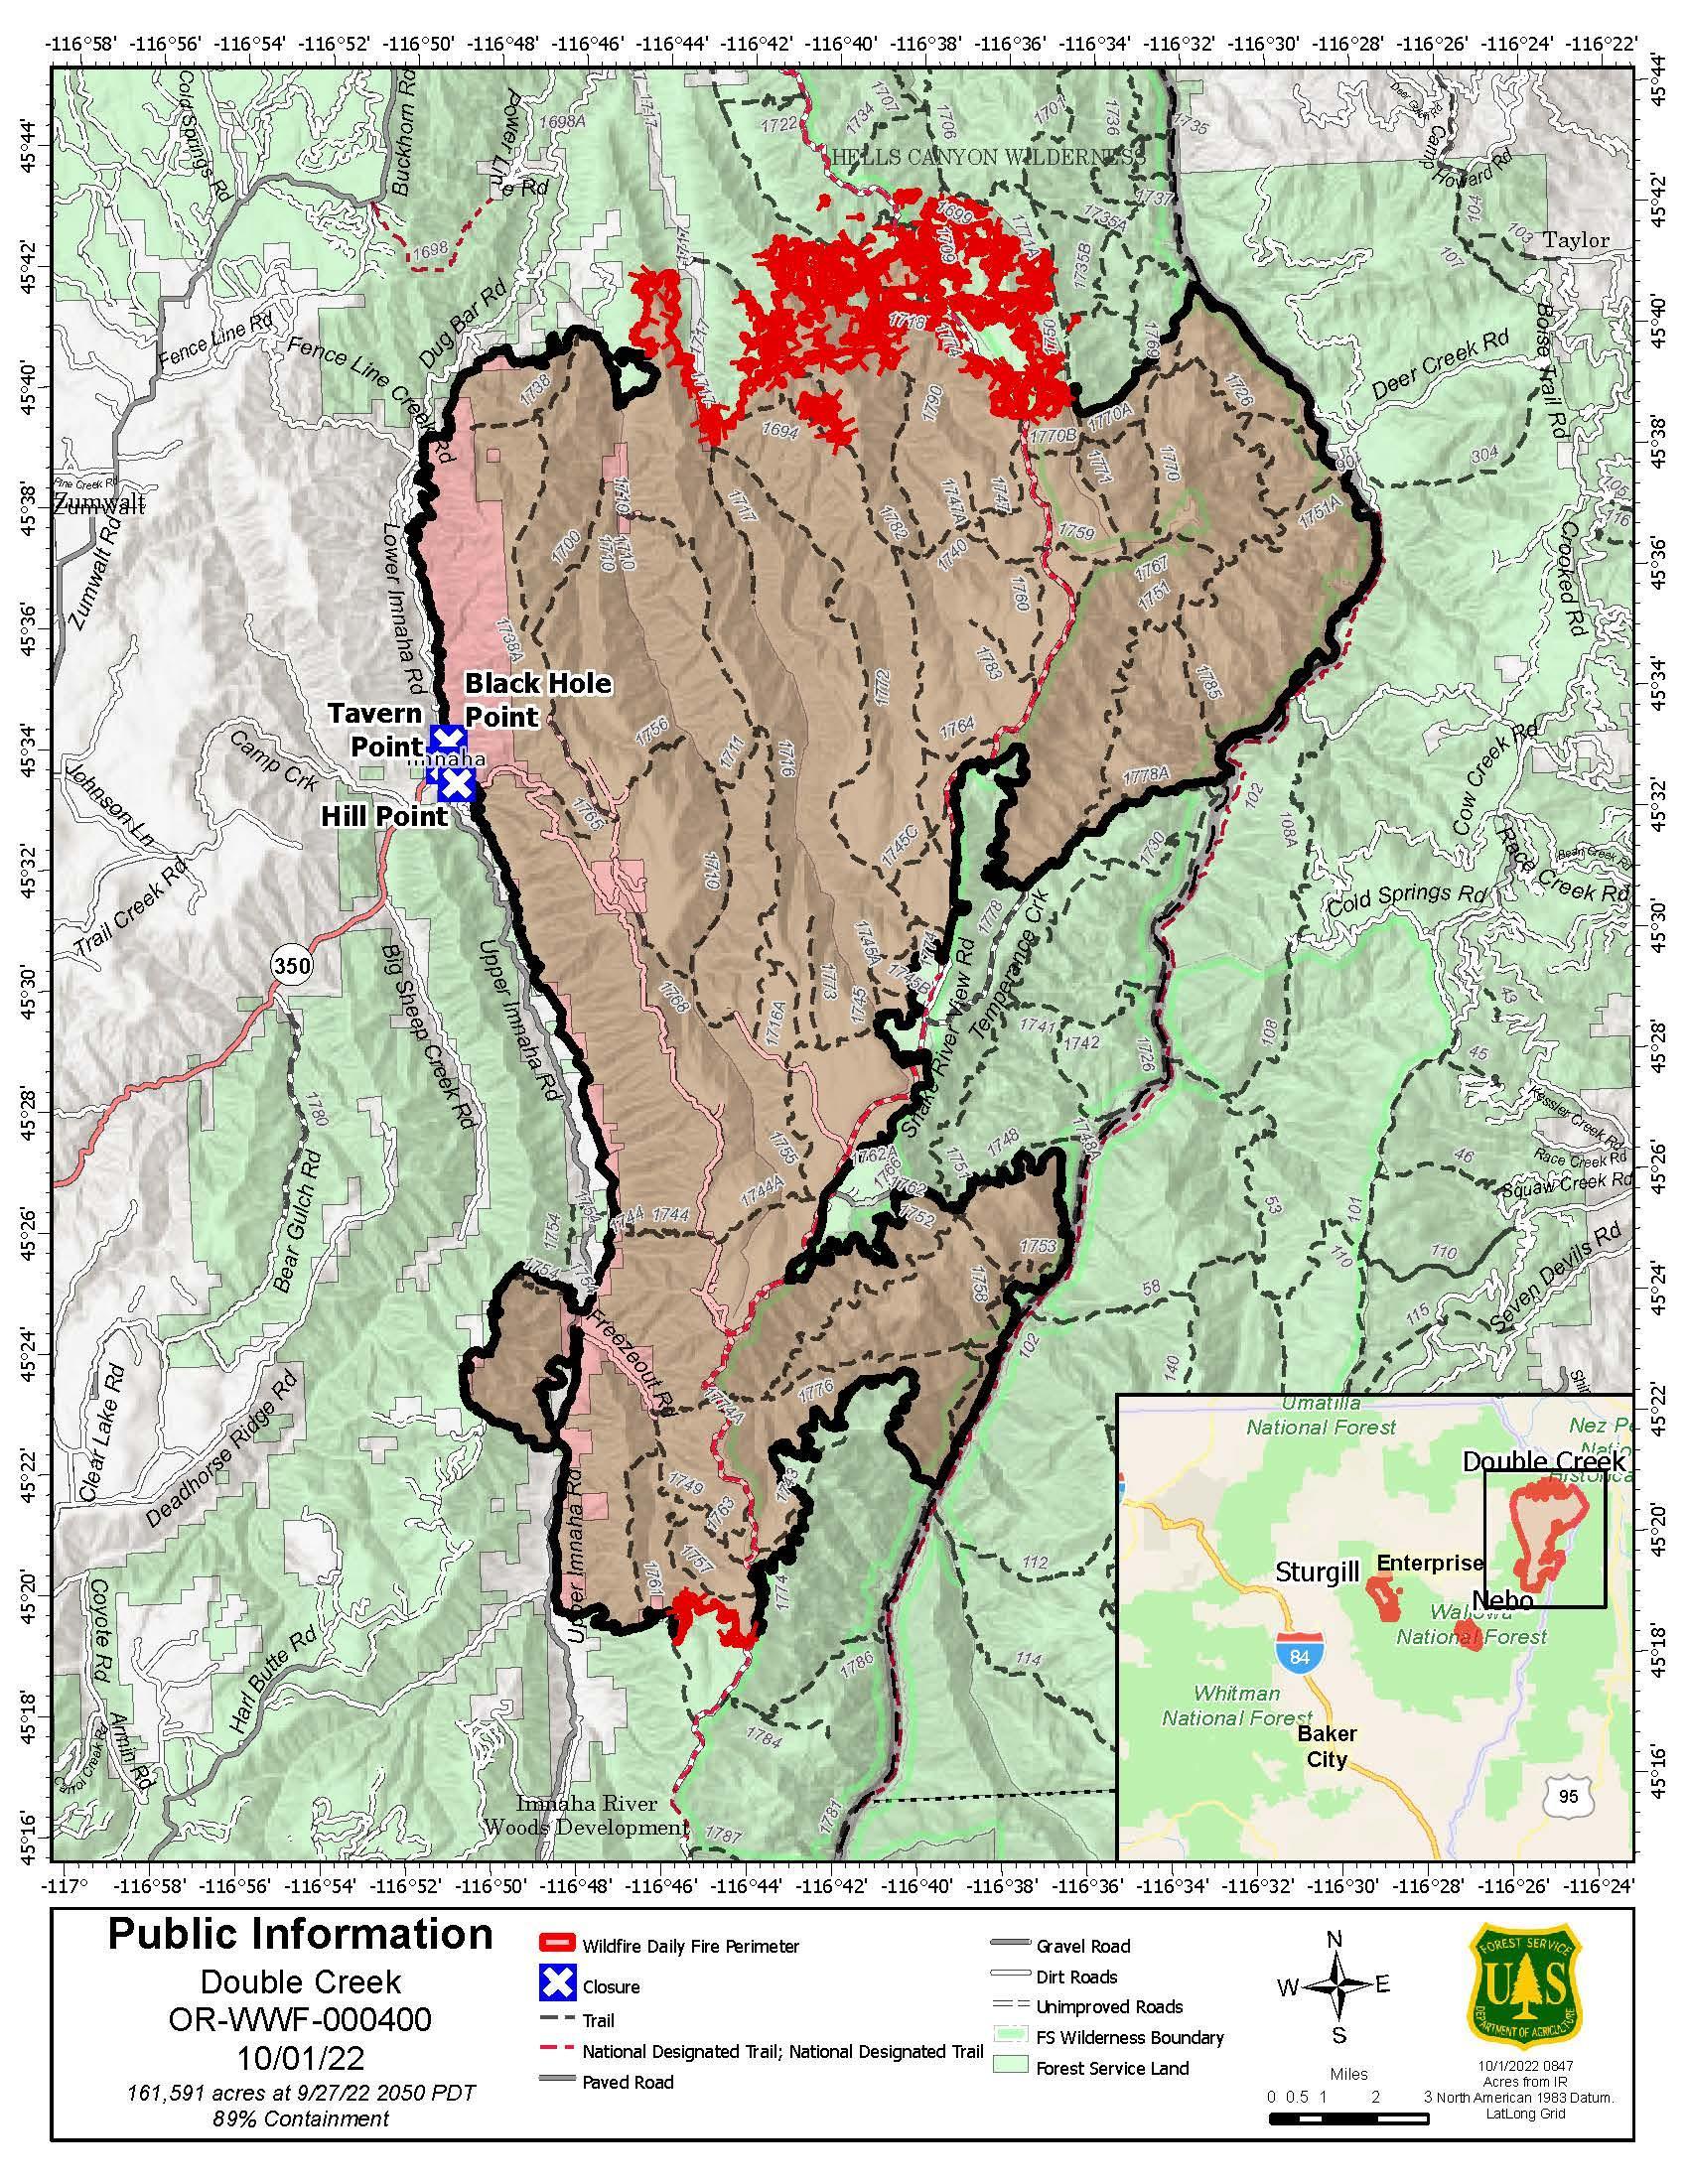  Double Creek Fire Map - 20221001